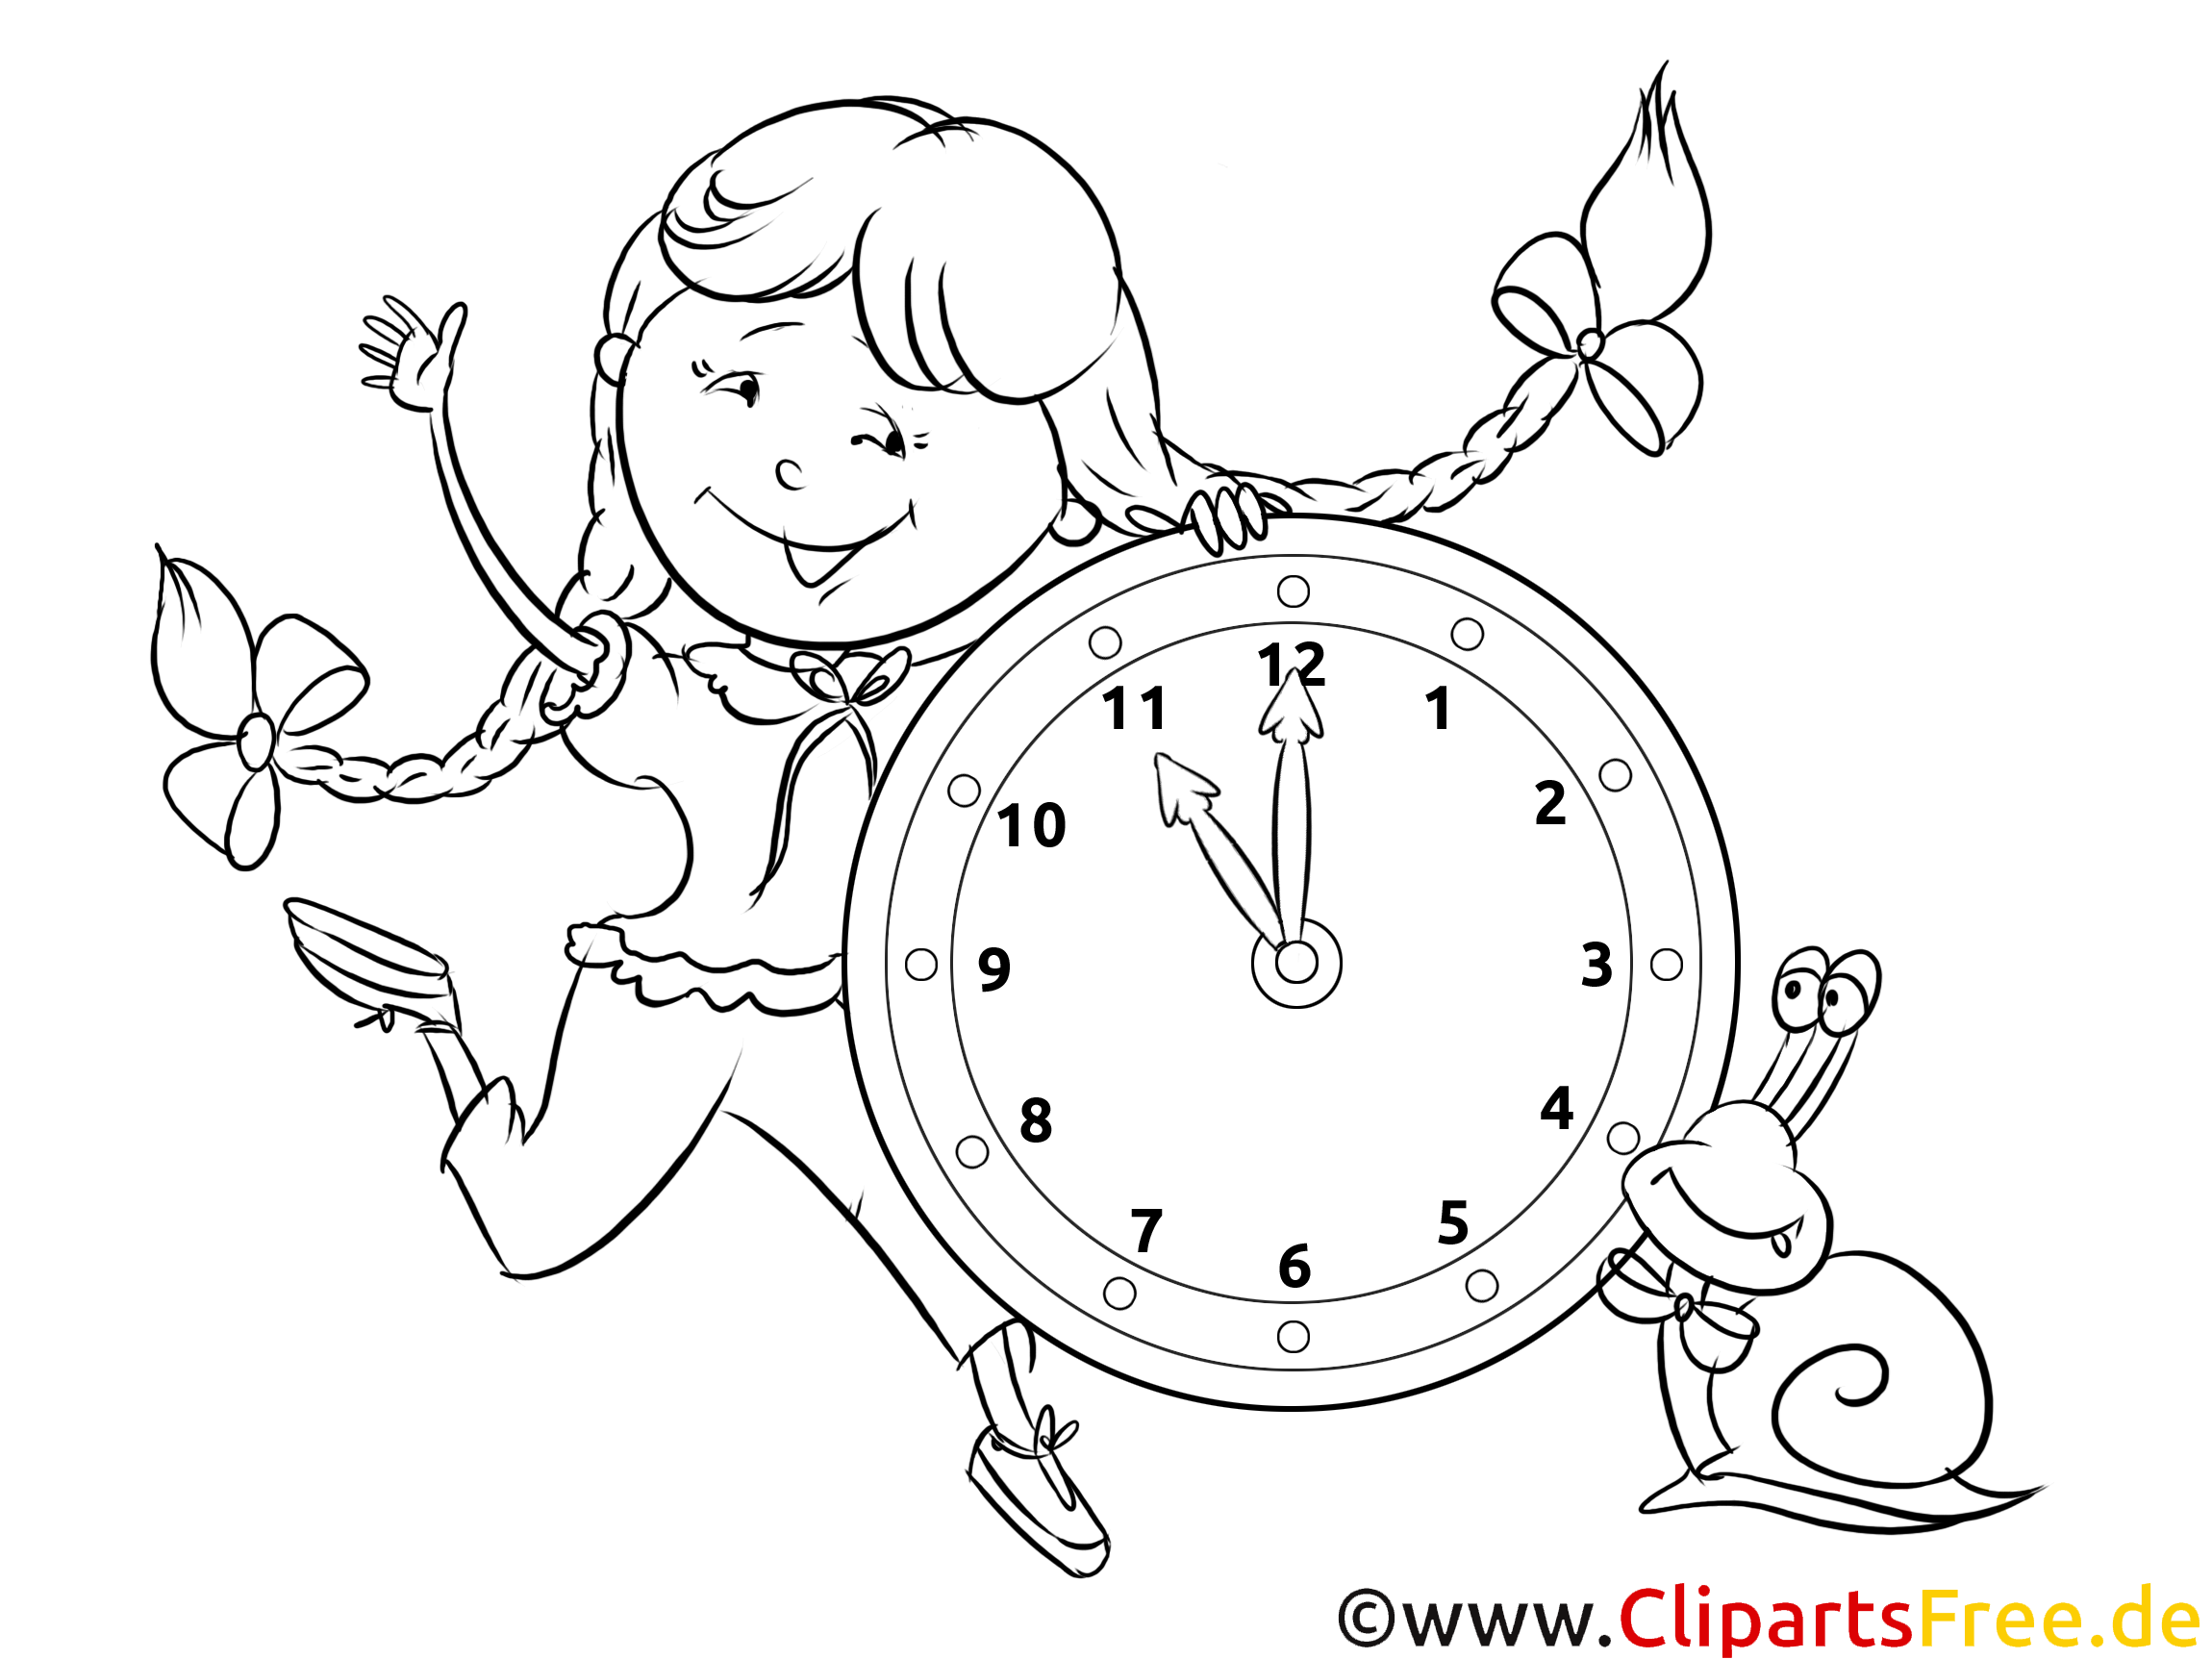 Часы на времени нарисовать. Часы раскраска. Часы для раскрашивания для детей. Часы раскраска для детей. Часы детские раскраска.